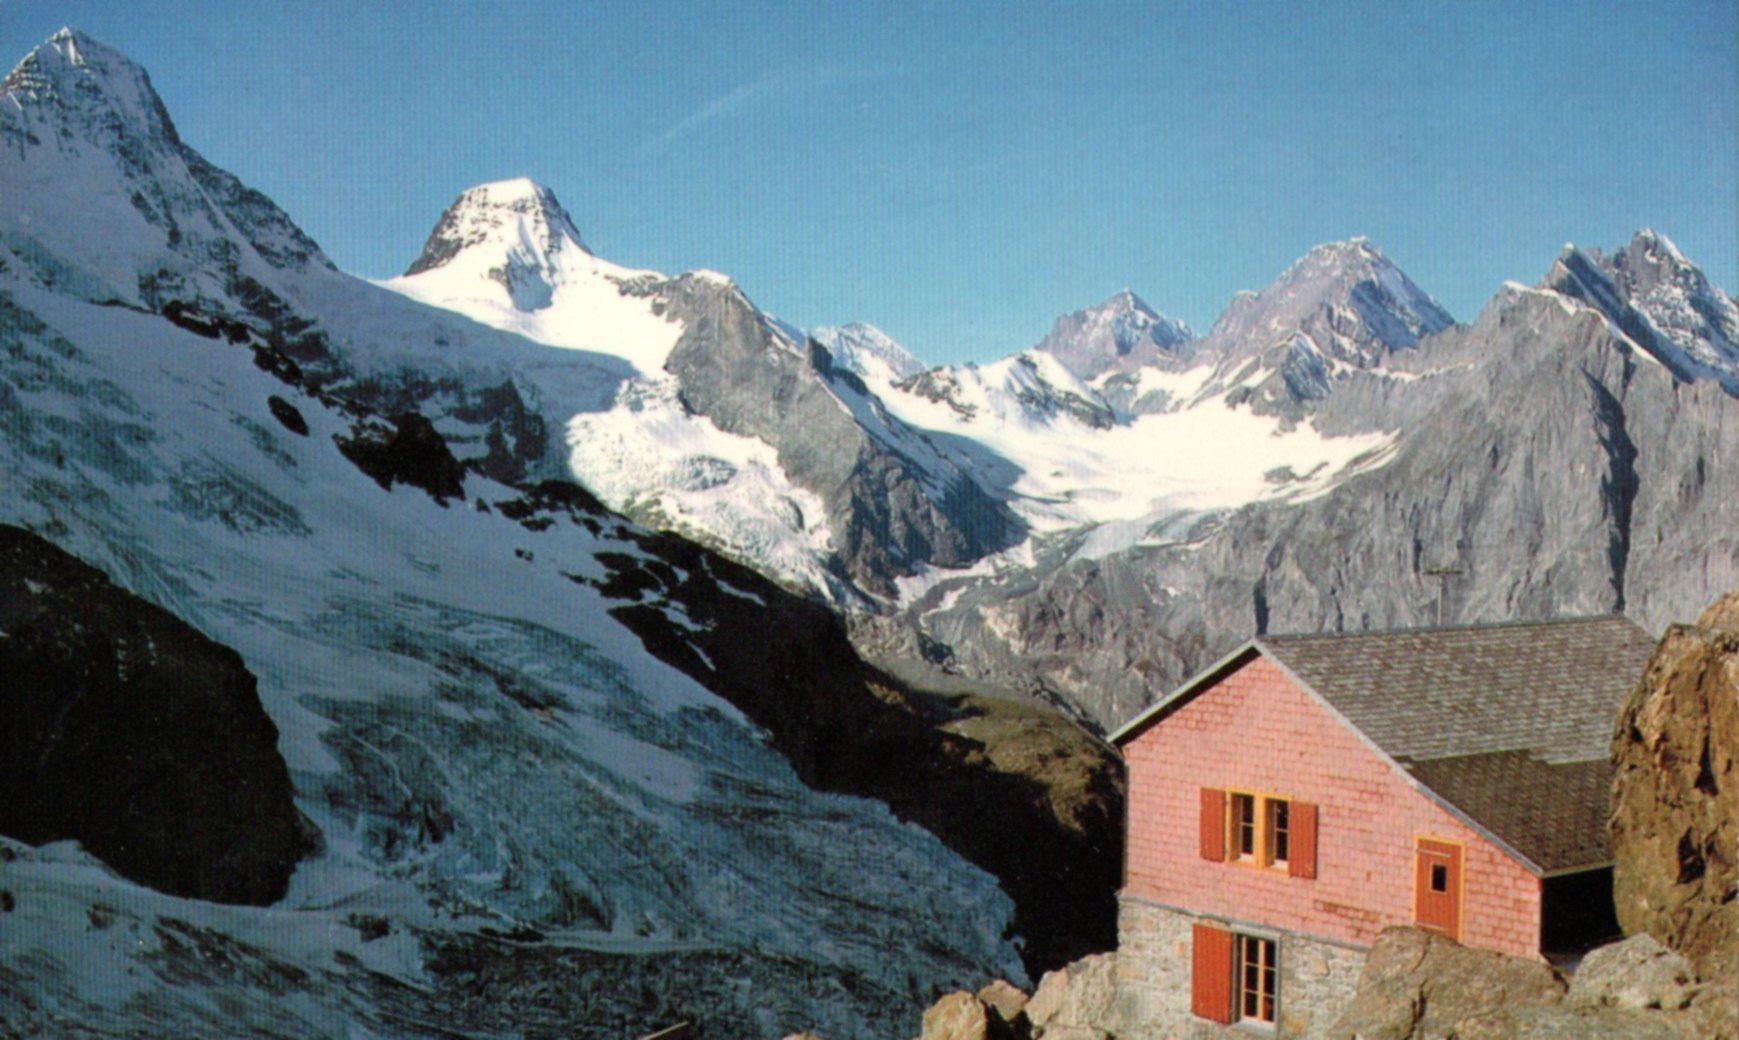 Tschingelhorn, Blumlisalphorn, Gspaltenhorn from Rottal Hut above Lauterbrunnen in the Bernese Oberlands region of the Swiss Alps